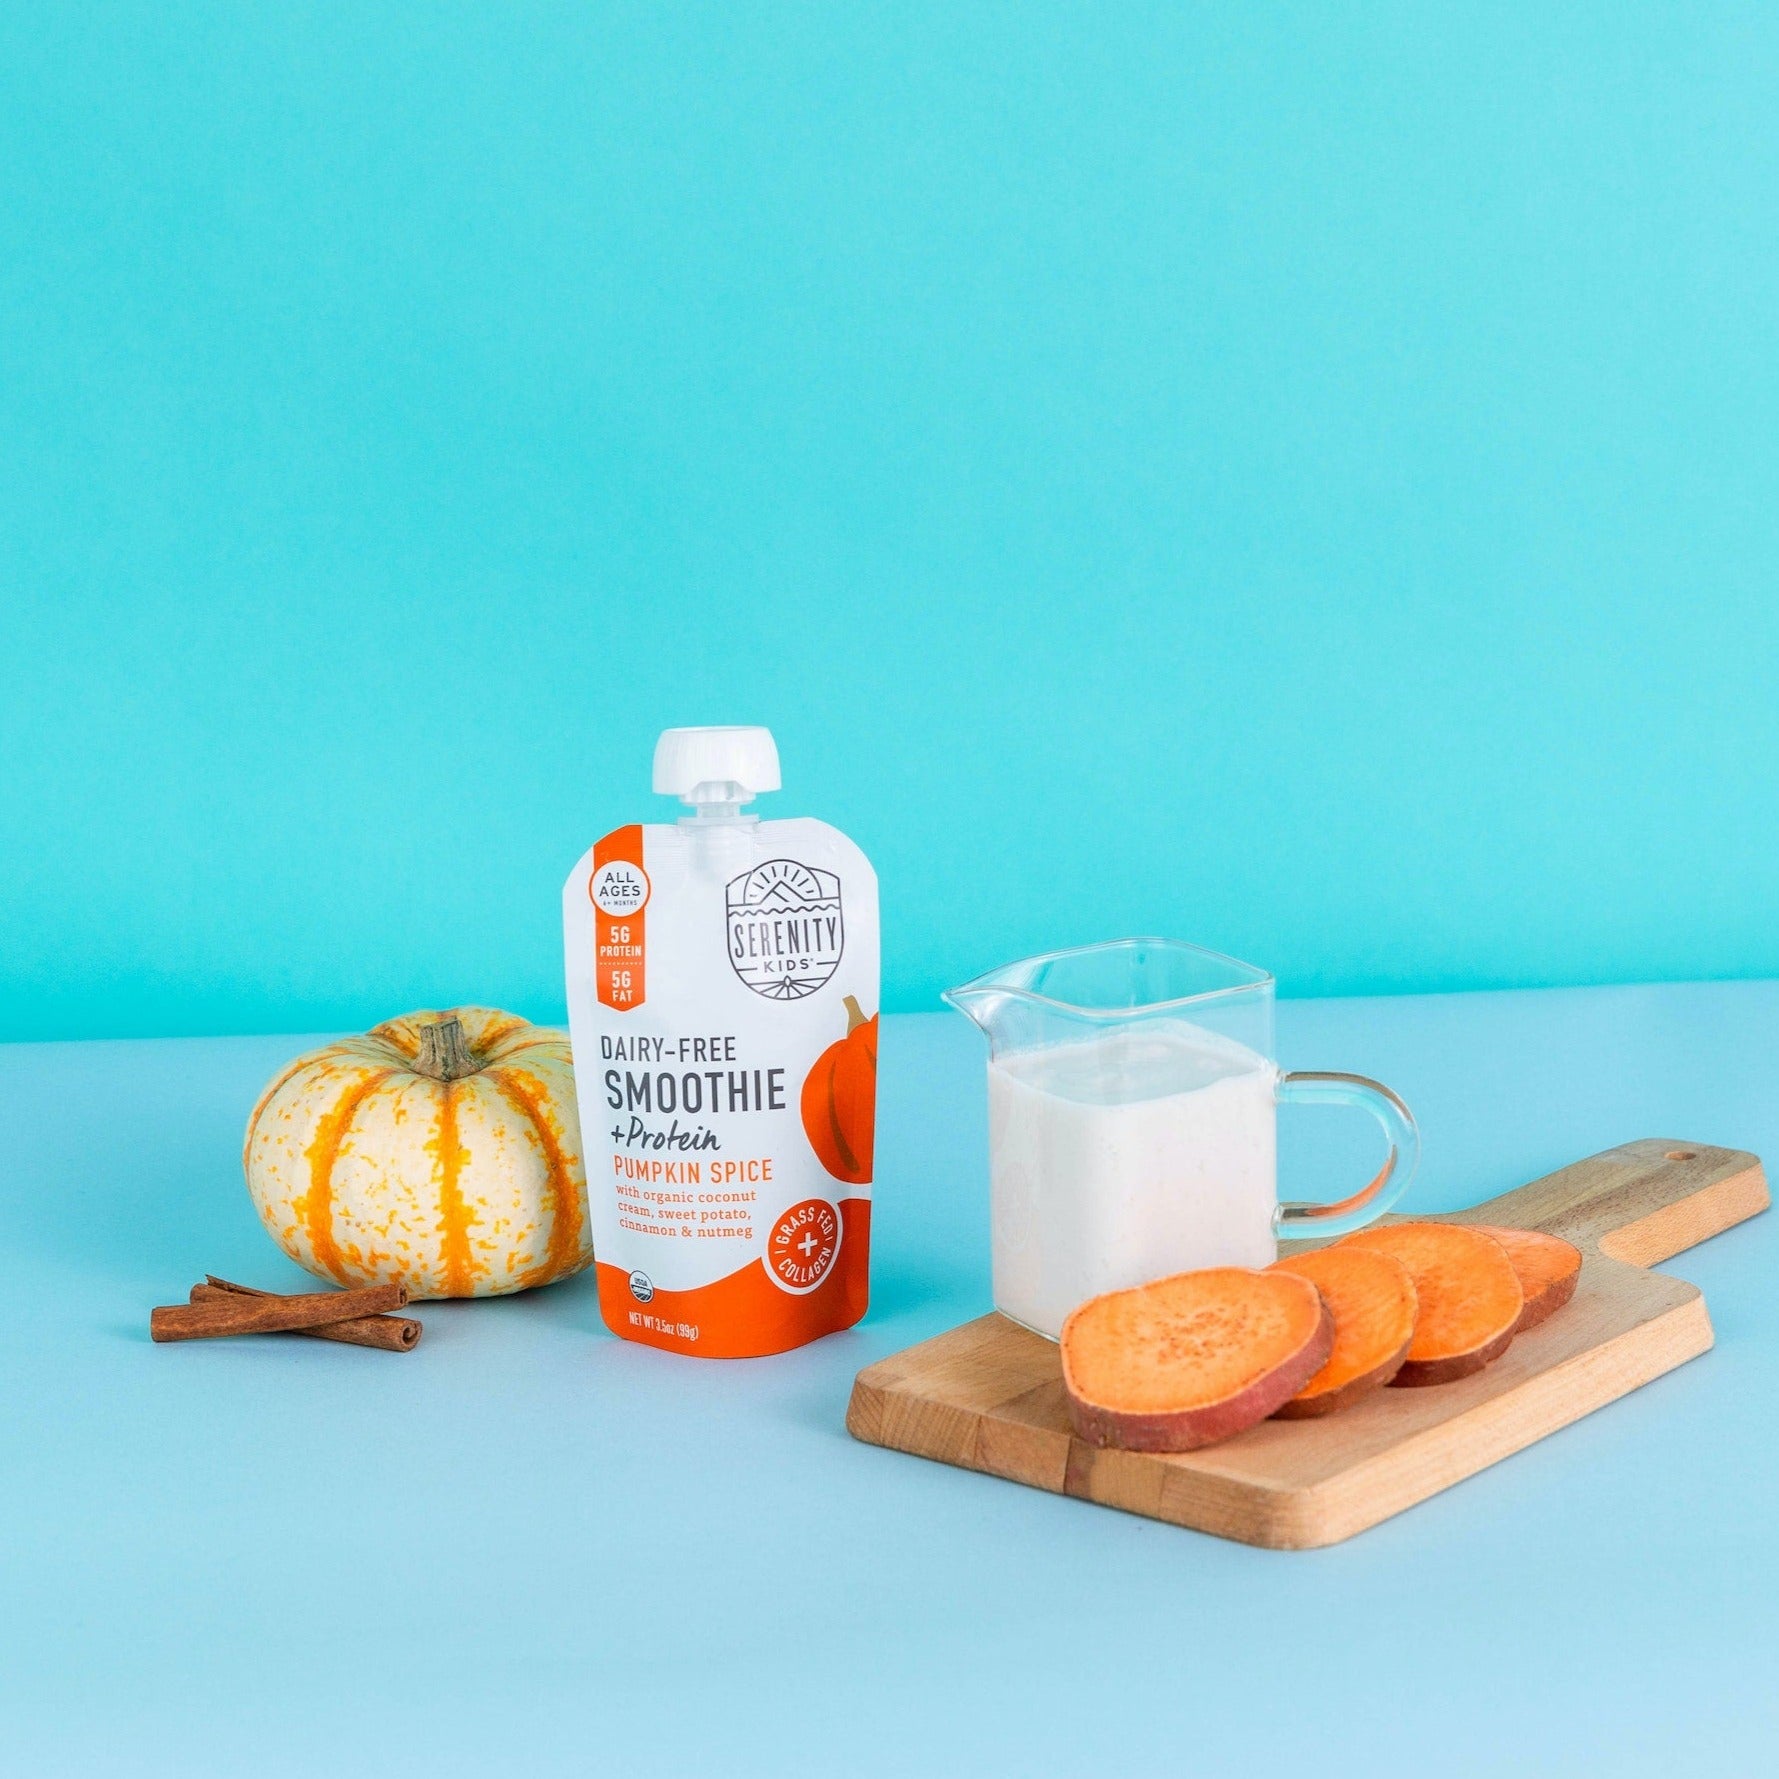 Pumpkin Spice Dairy-Free Smoothie + Protein - Serenity Kids - Smoothie Pouch